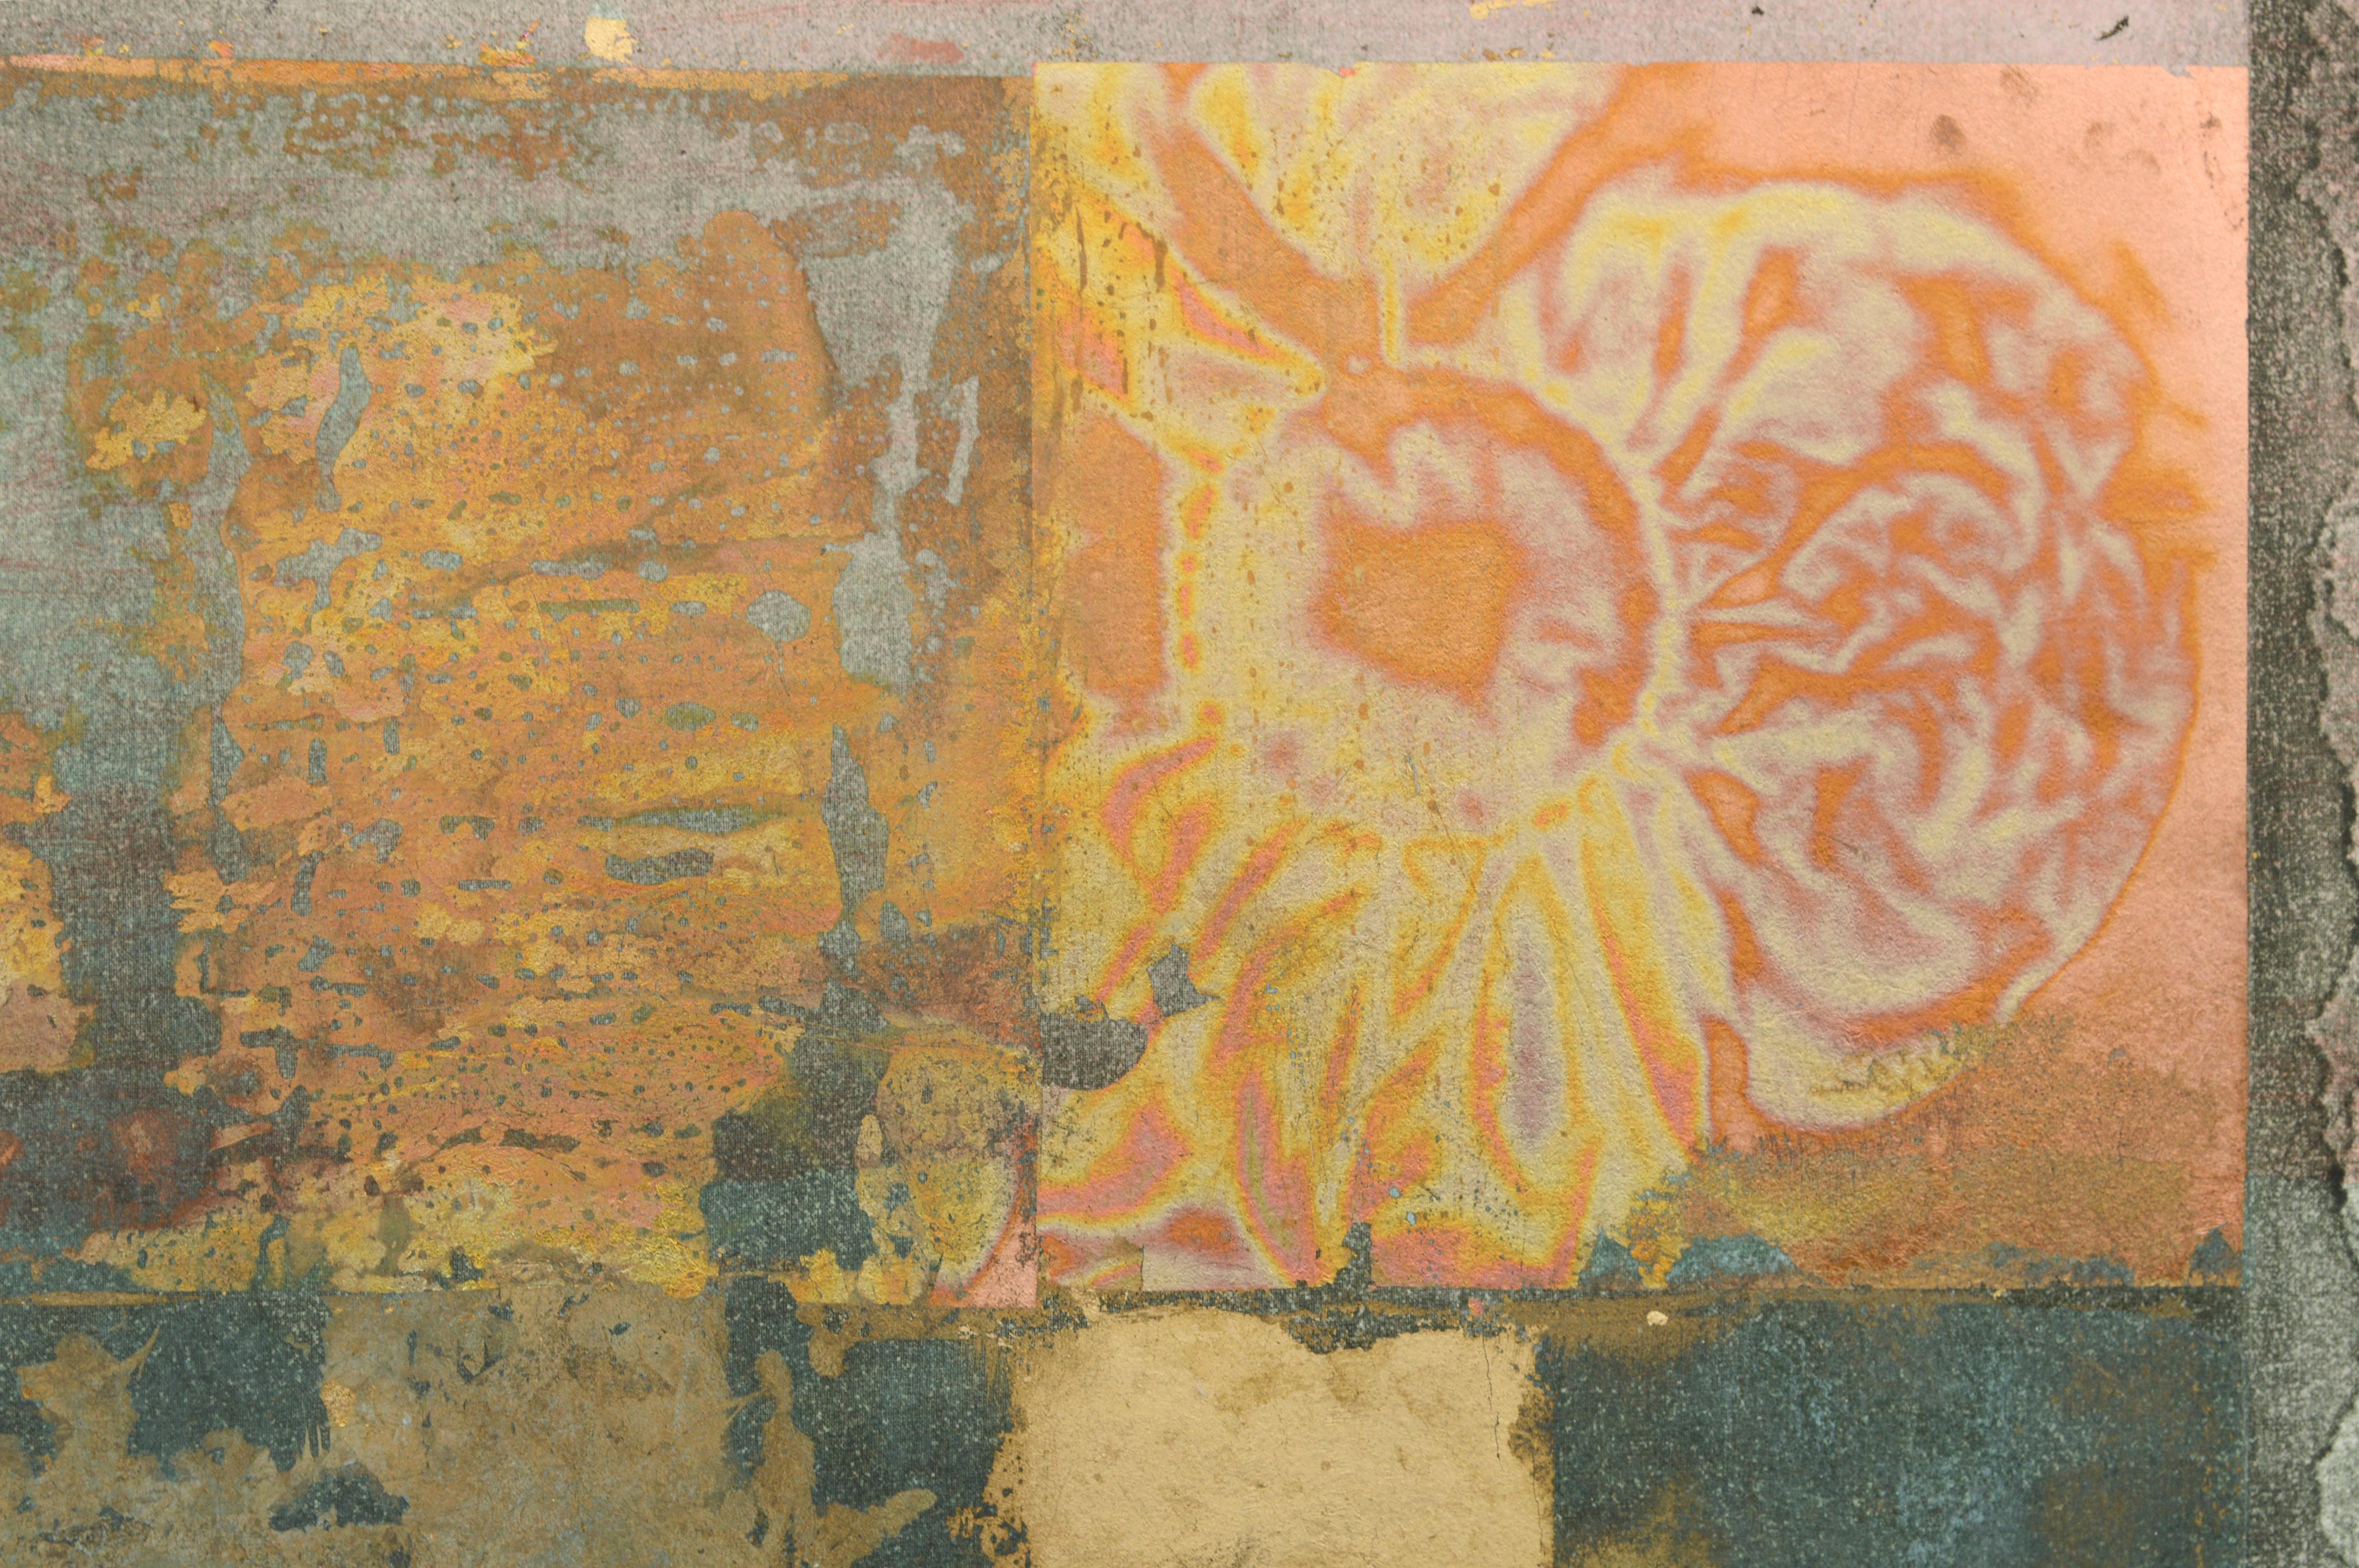 Abstrakte Komposition aus Blattgold und Kupfer von Patricia A. Pearce (Amerikanerin, geb. 1948). Dieses Stück besteht aus Schichten von Blattgold und Kupfer, die mit verschiedenen Methoden behandelt wurden, wodurch ein irisierender Effekt entsteht.